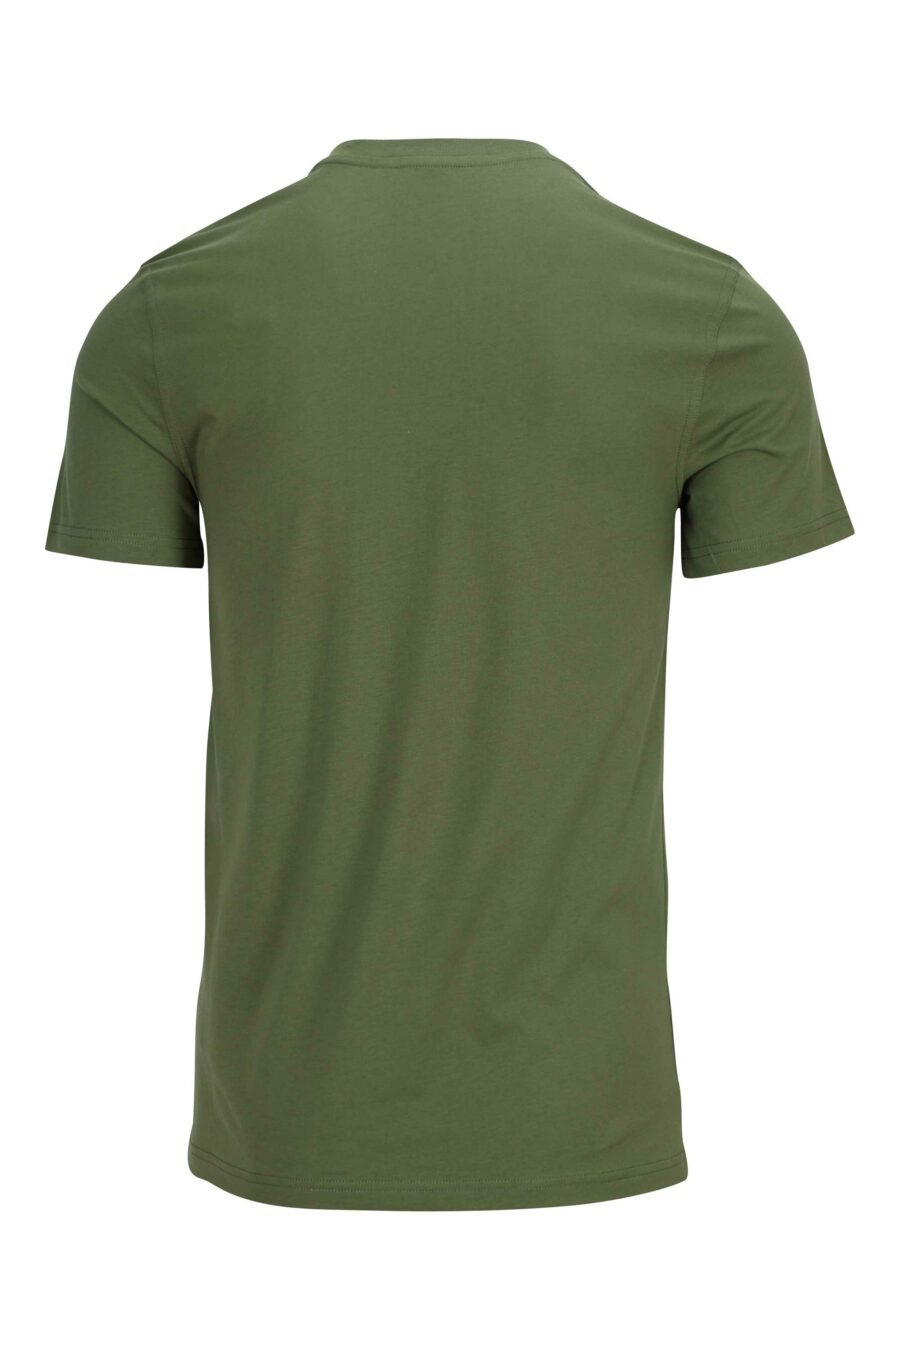 Militärgrünes T-Shirt aus Bio-Baumwolle mit Maxilogo "teddy" - 889316854527 1